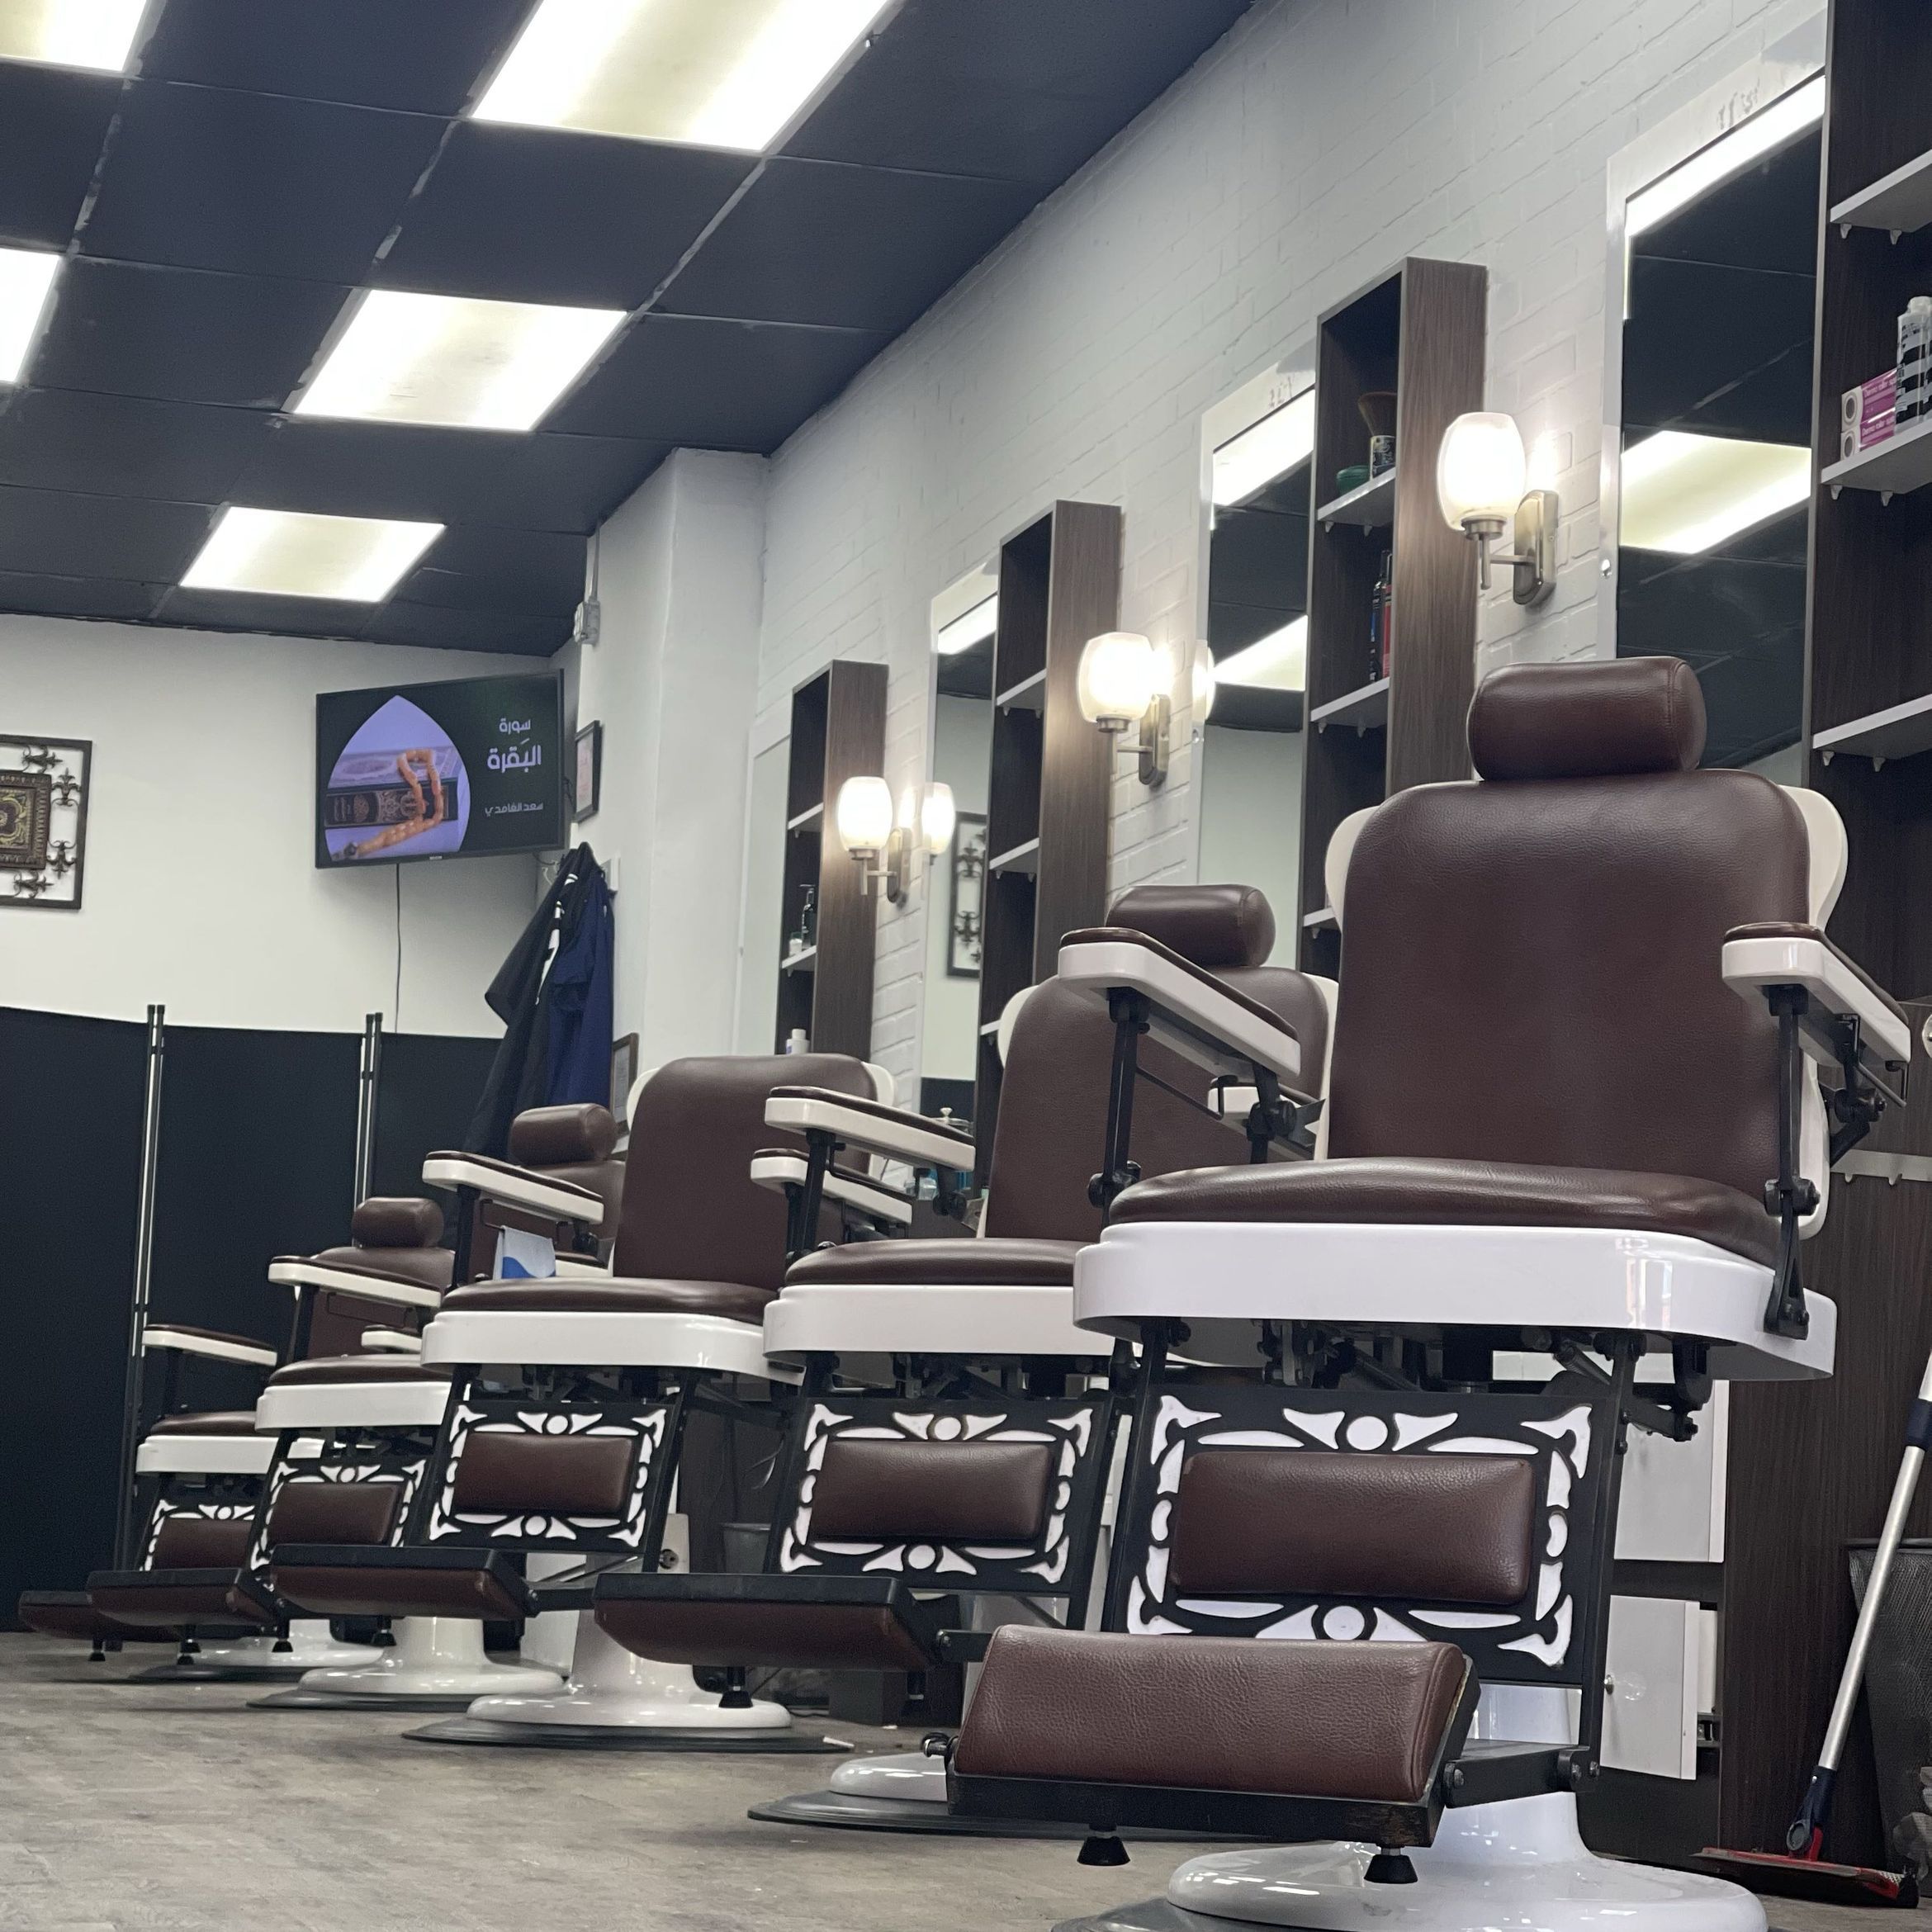 Addy barbershop, 7411 3rd Ave, Brooklyn, 11209